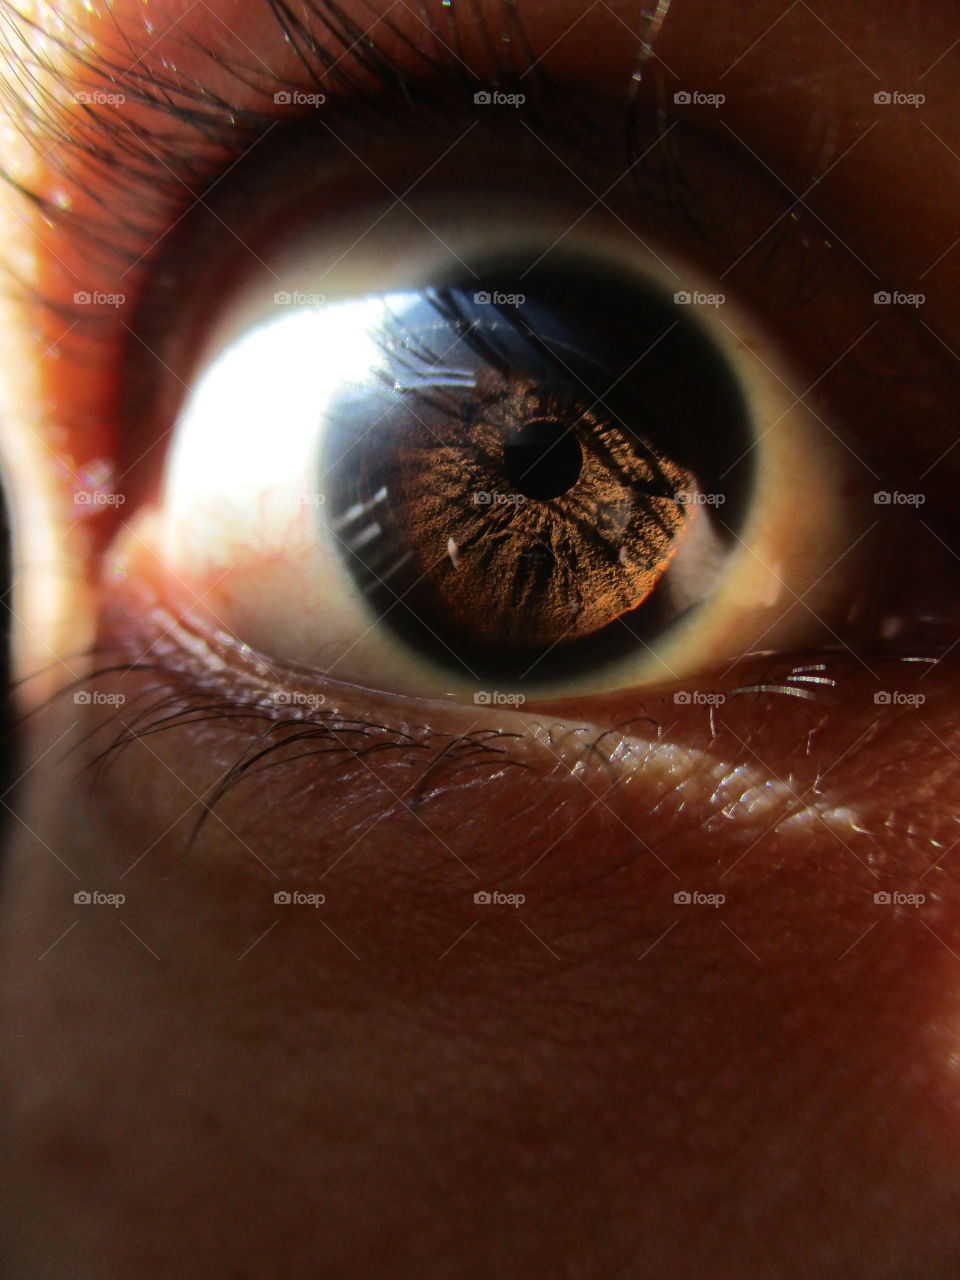 iris eye